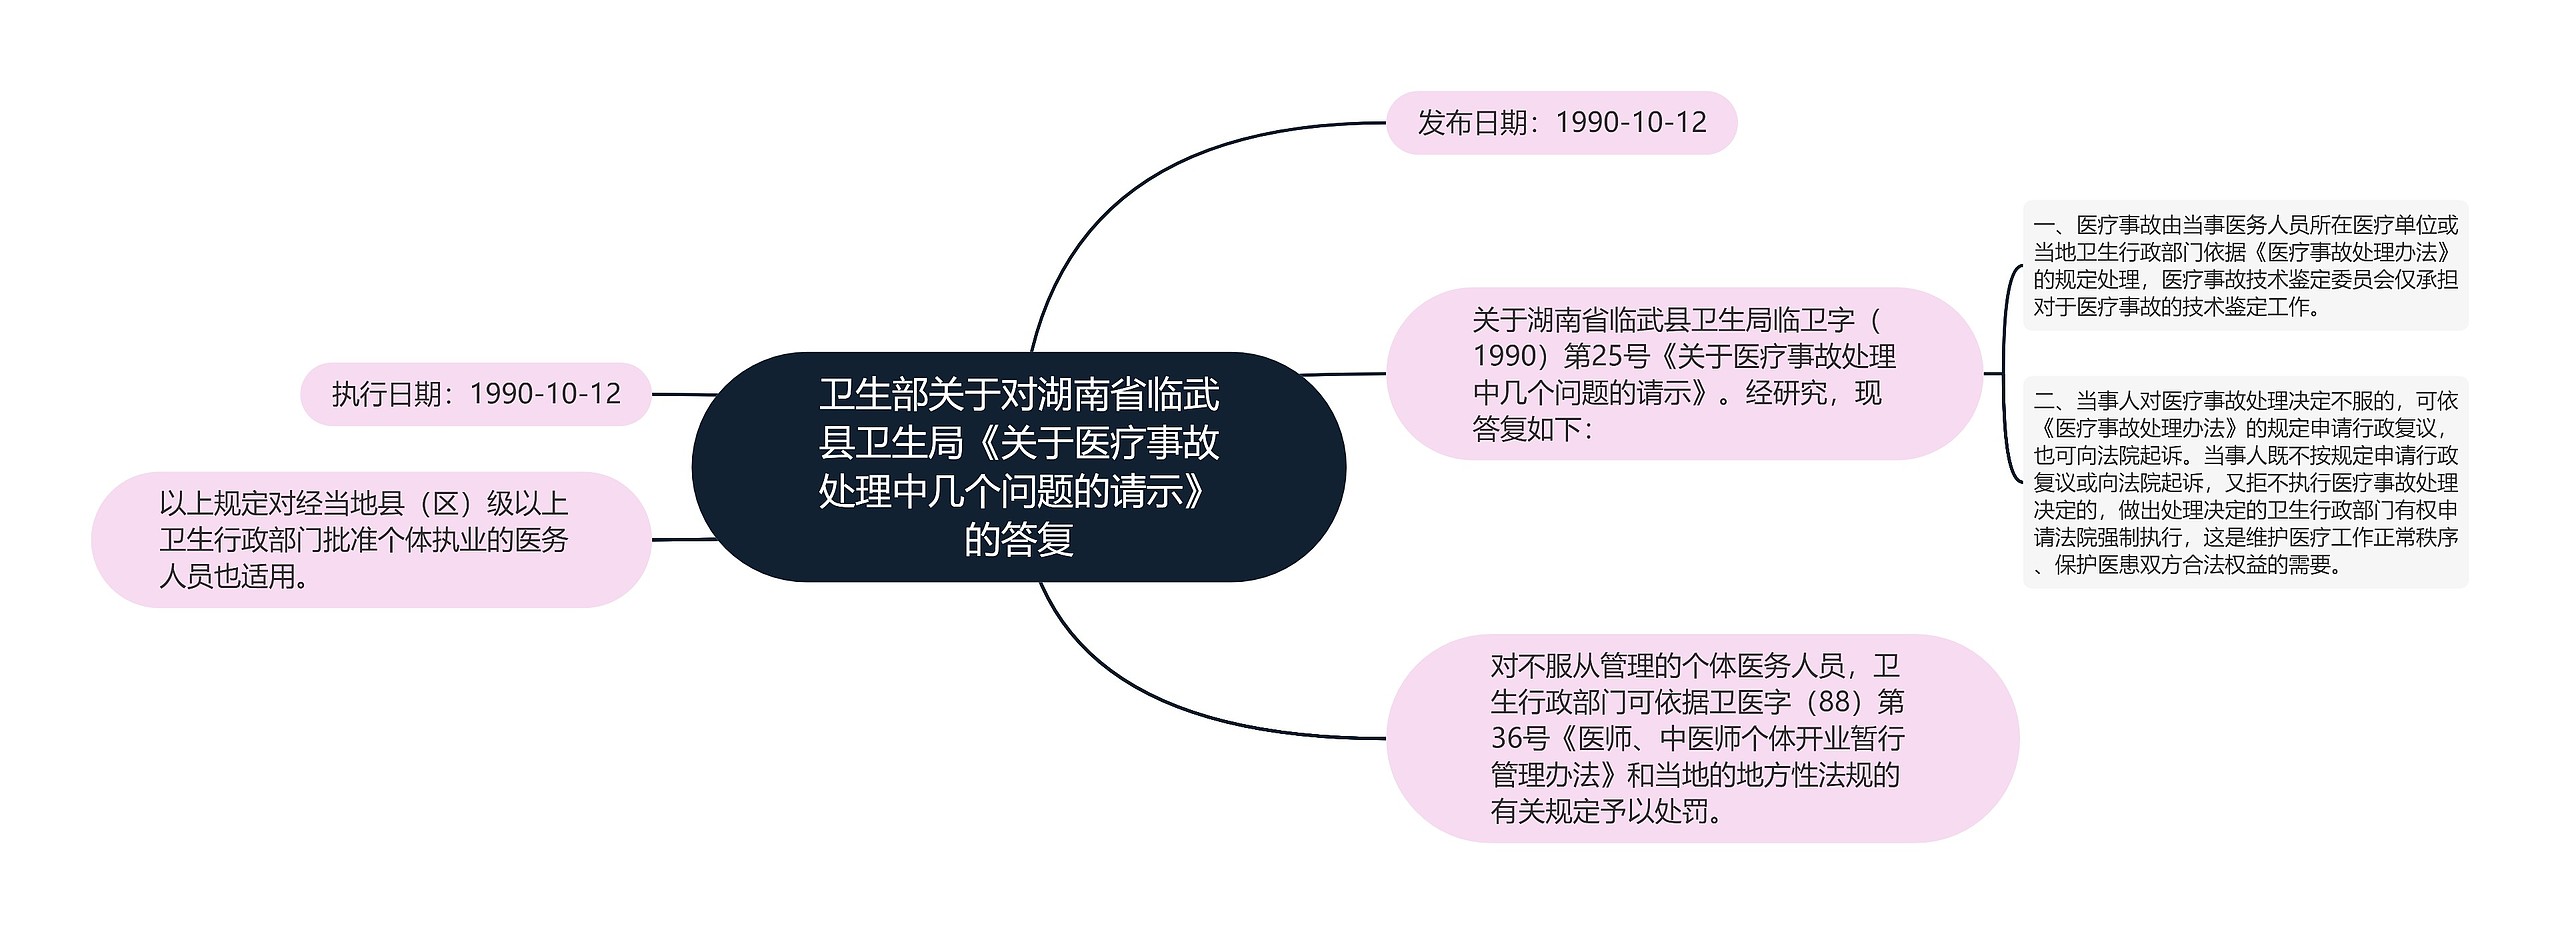 卫生部关于对湖南省临武县卫生局《关于医疗事故处理中几个问题的请示》的答复